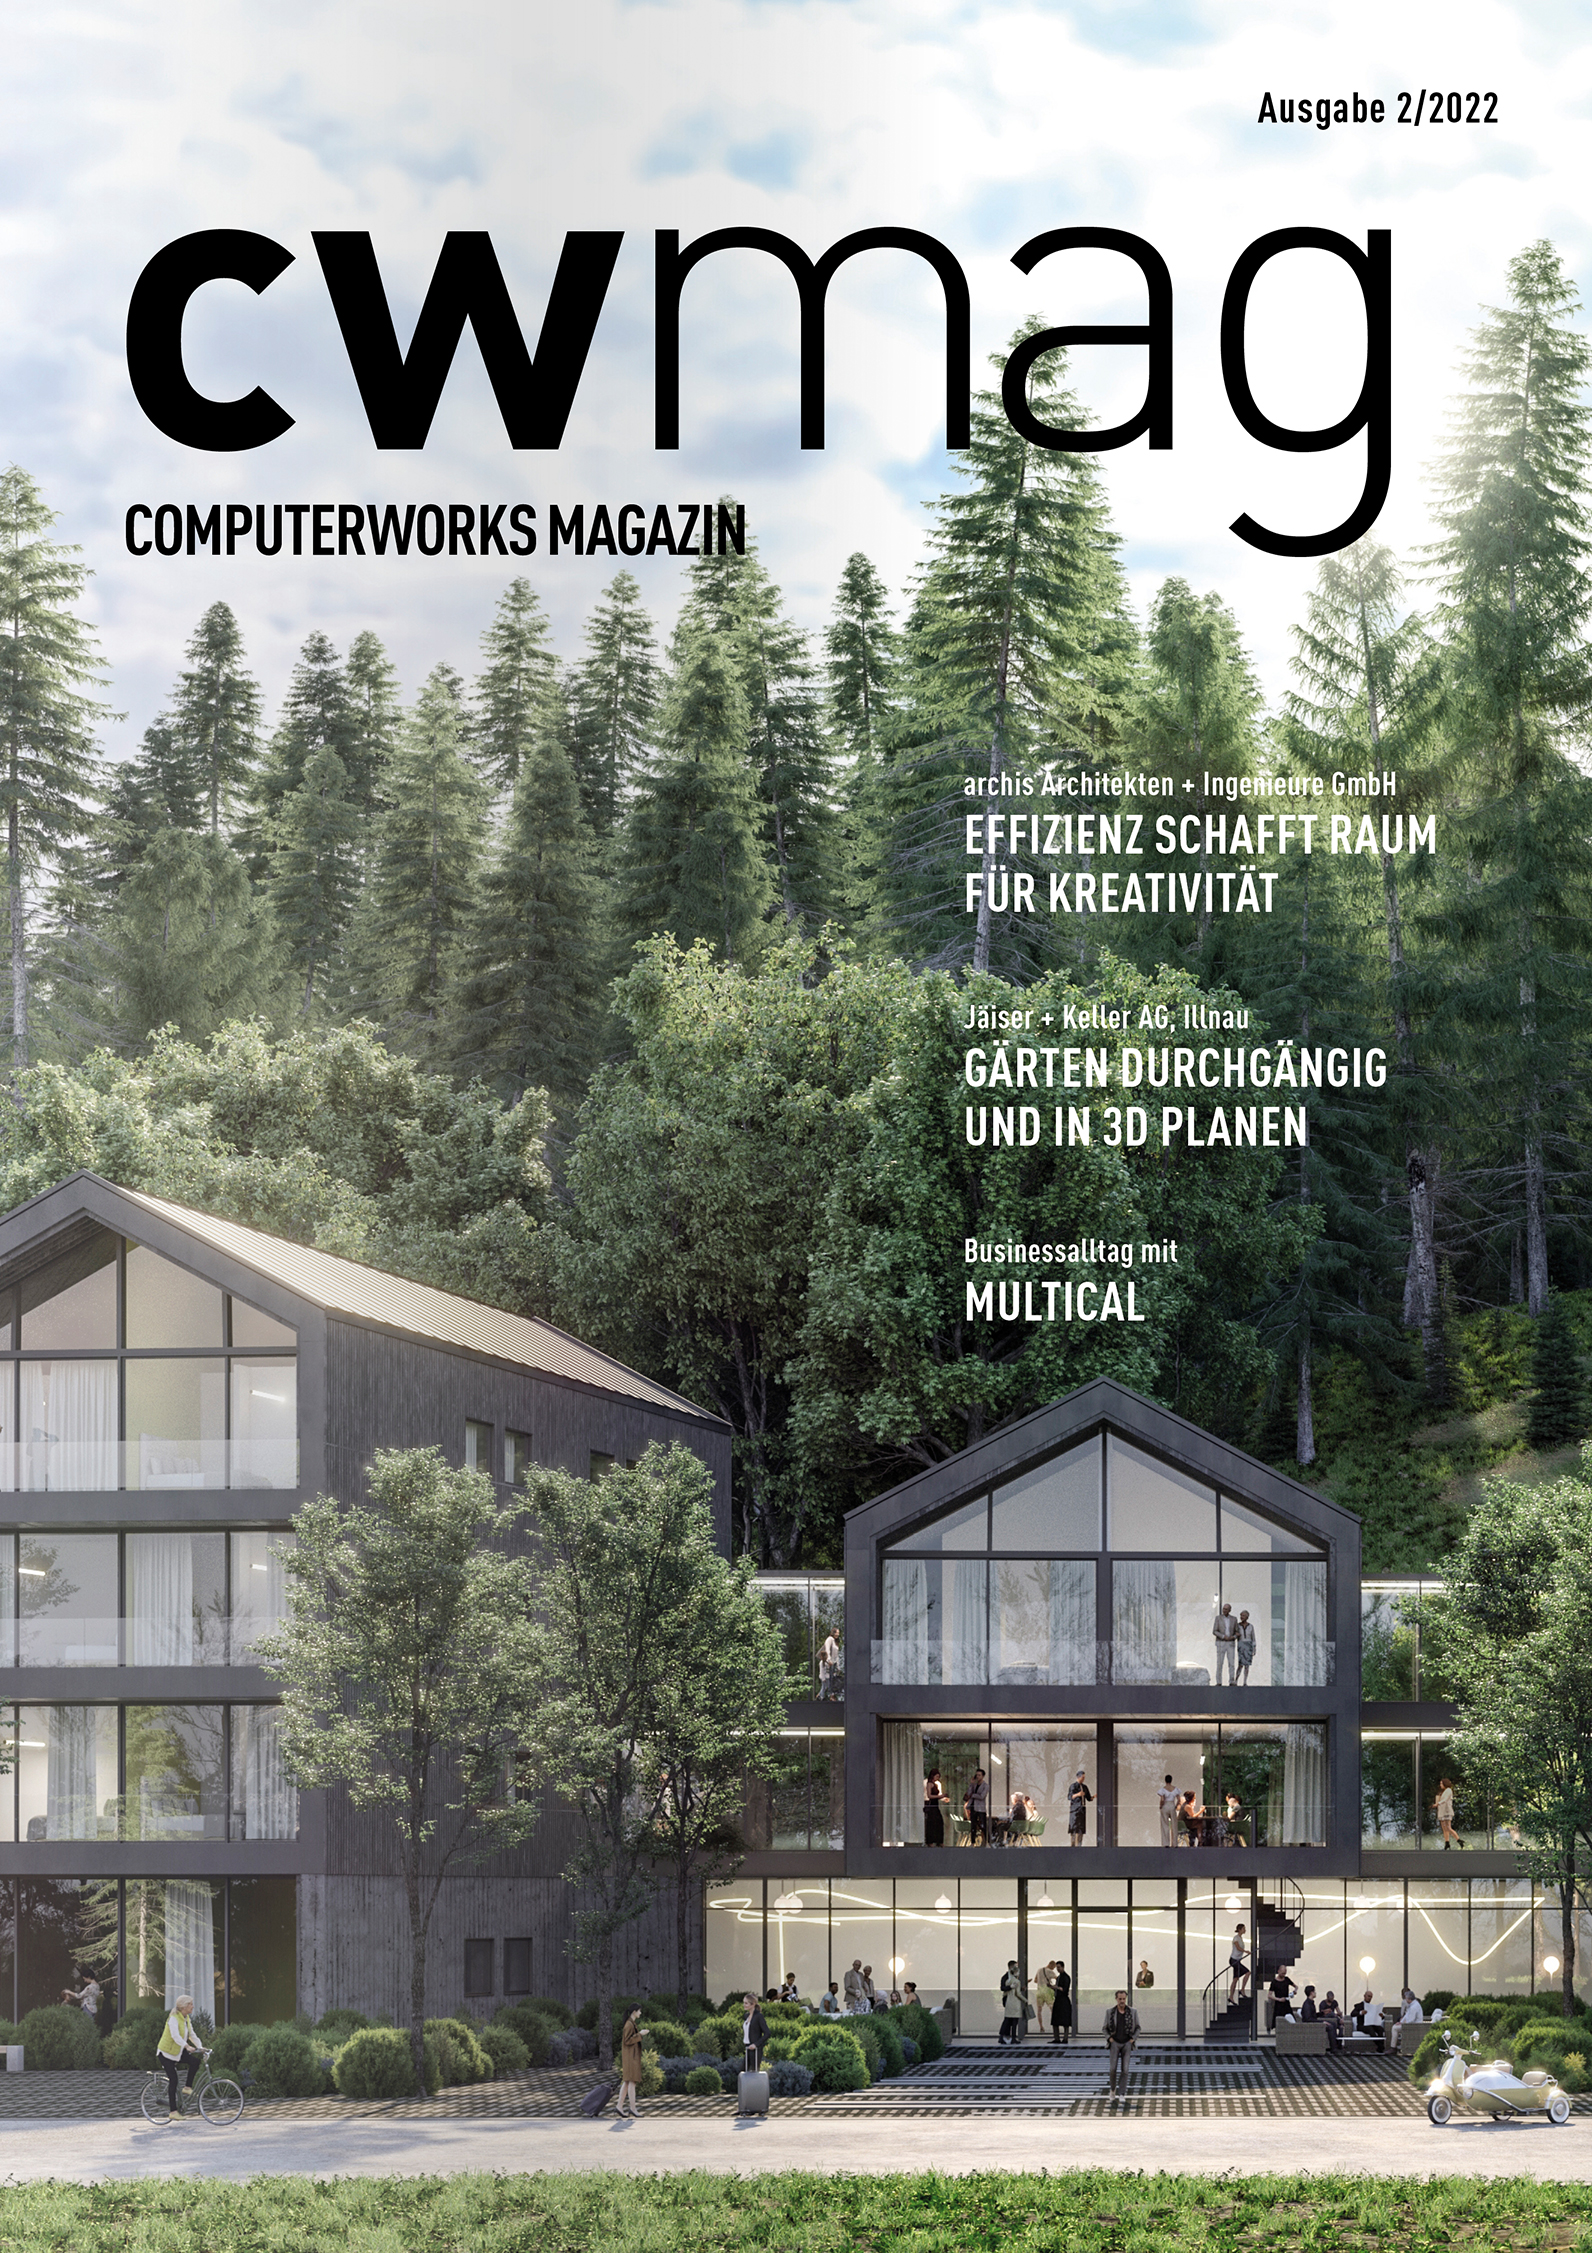 cwmag ComputerWorks Magazin -Ausgabe 02/2022